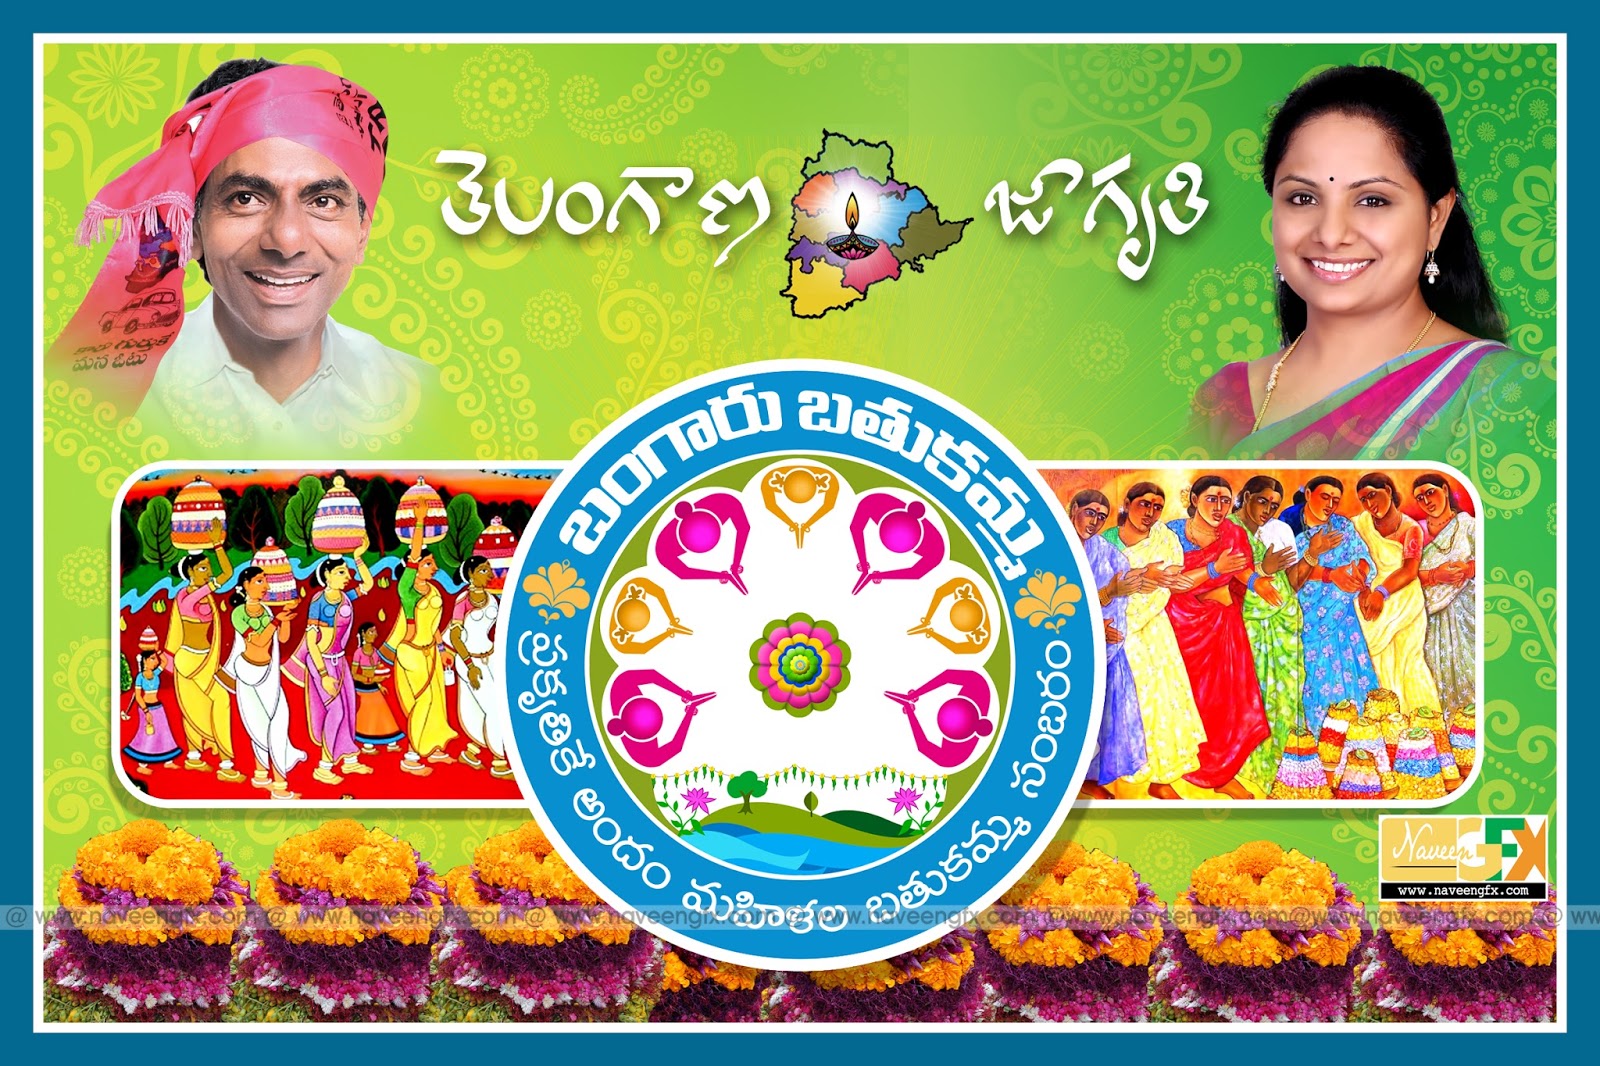 bathukamma sambaralu telugu poster and quotes free online | naveengfx